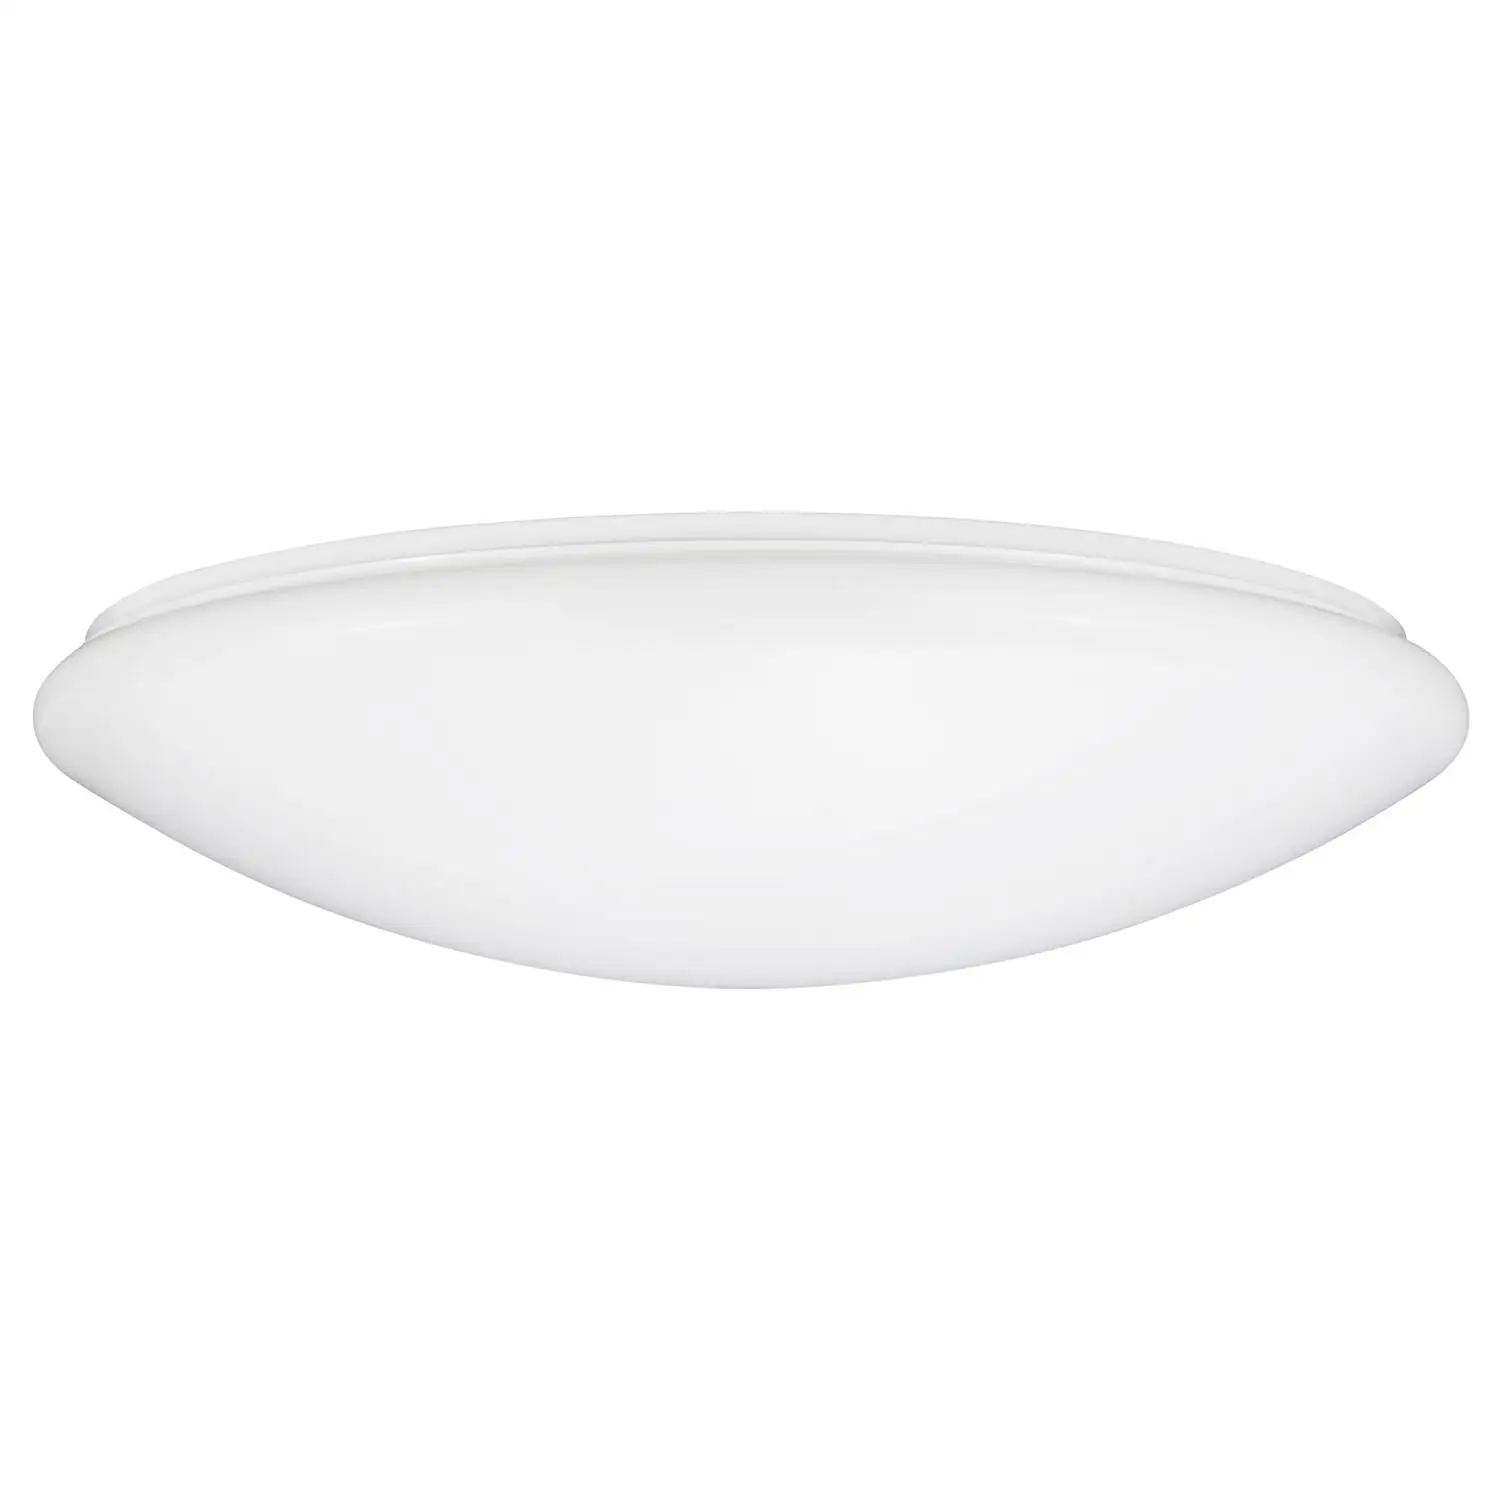 Sunlite LED Mushroom Ceiling Light Fixture, 16 Watt, Dimmable, 1050 Lumen, 40K - Cool White